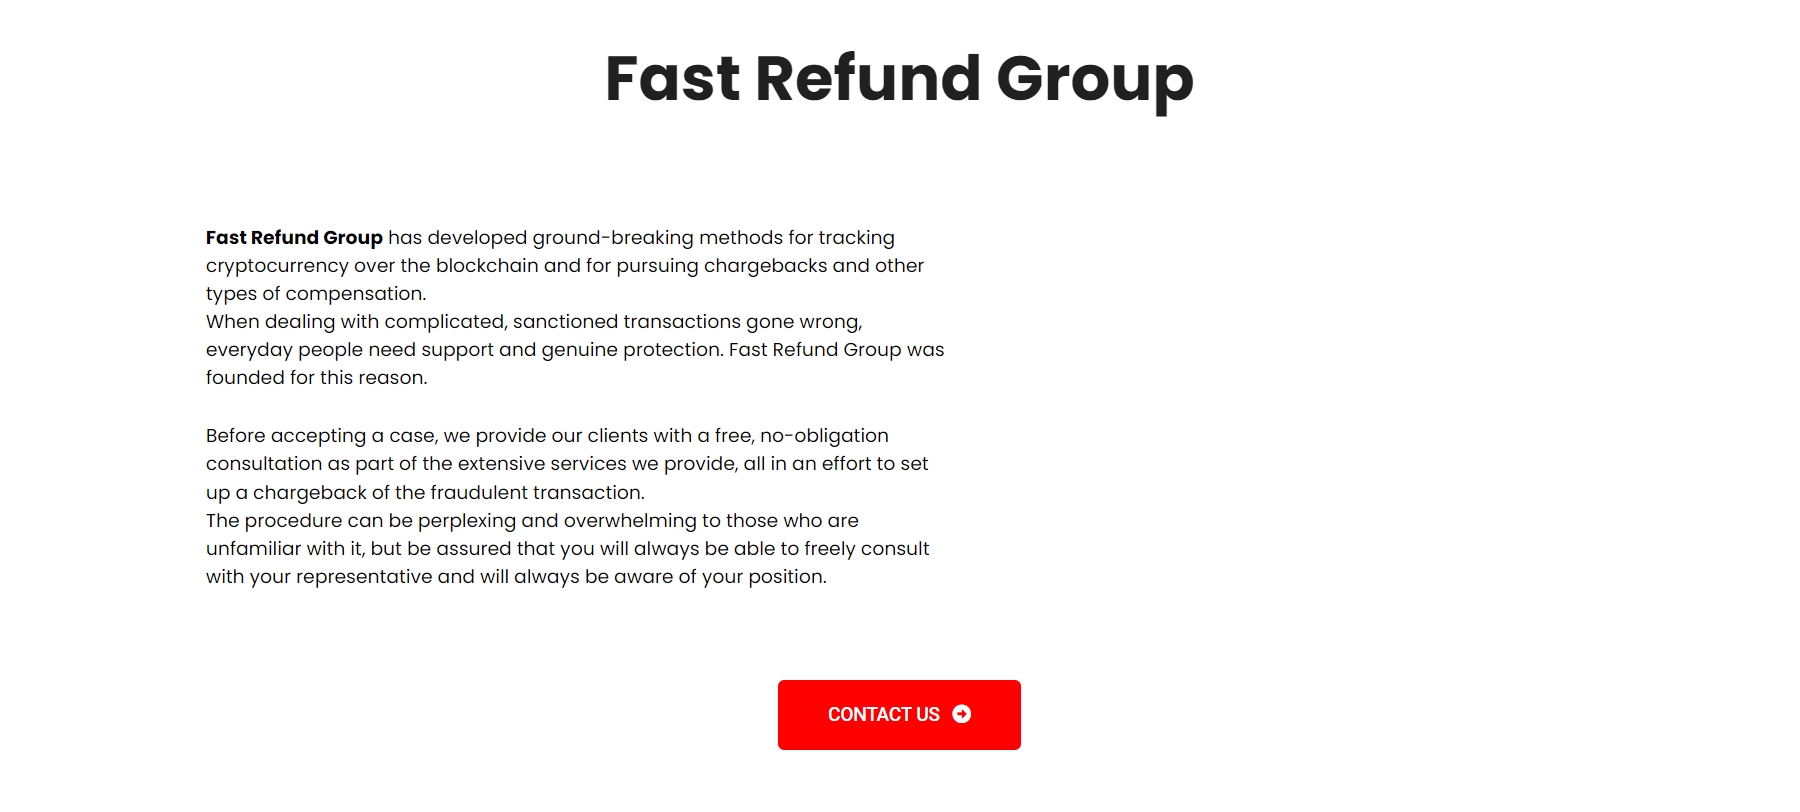 Fast Refund Group website